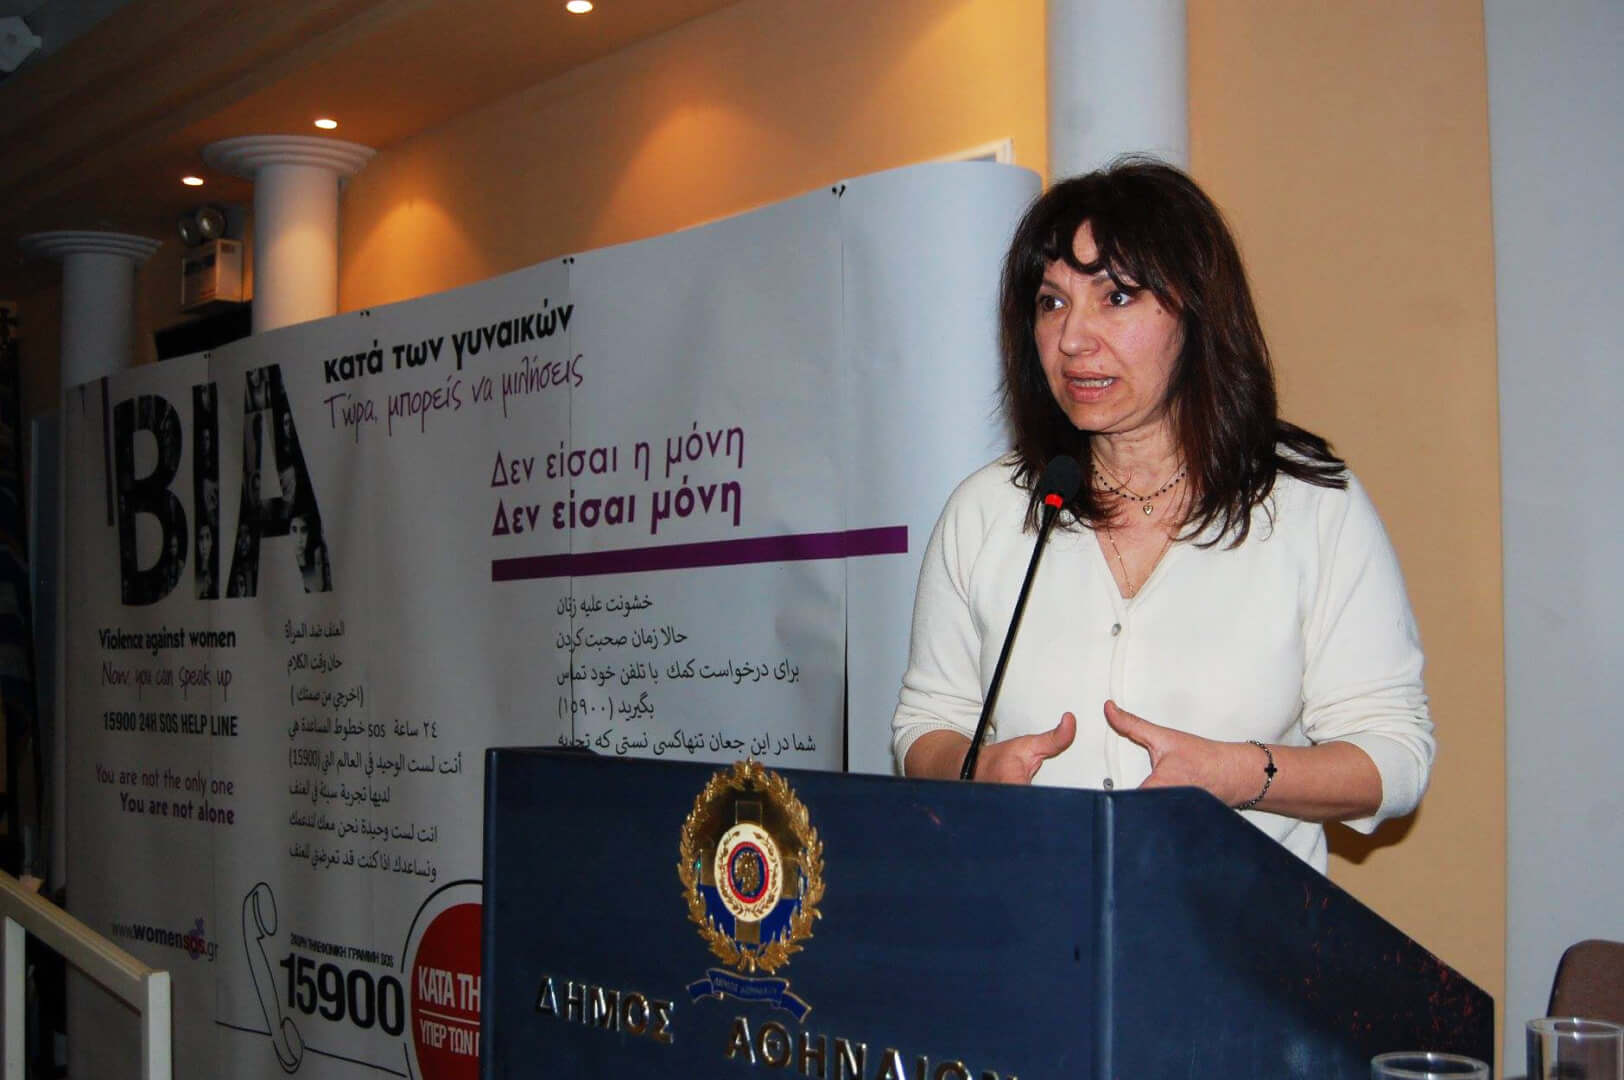 Η Ηλιουπολίτισσα Αγγελική Δουβή Υποψήφια Βουλευτής Με Τον ΣΥΡΙΖΑ Στα Νότια